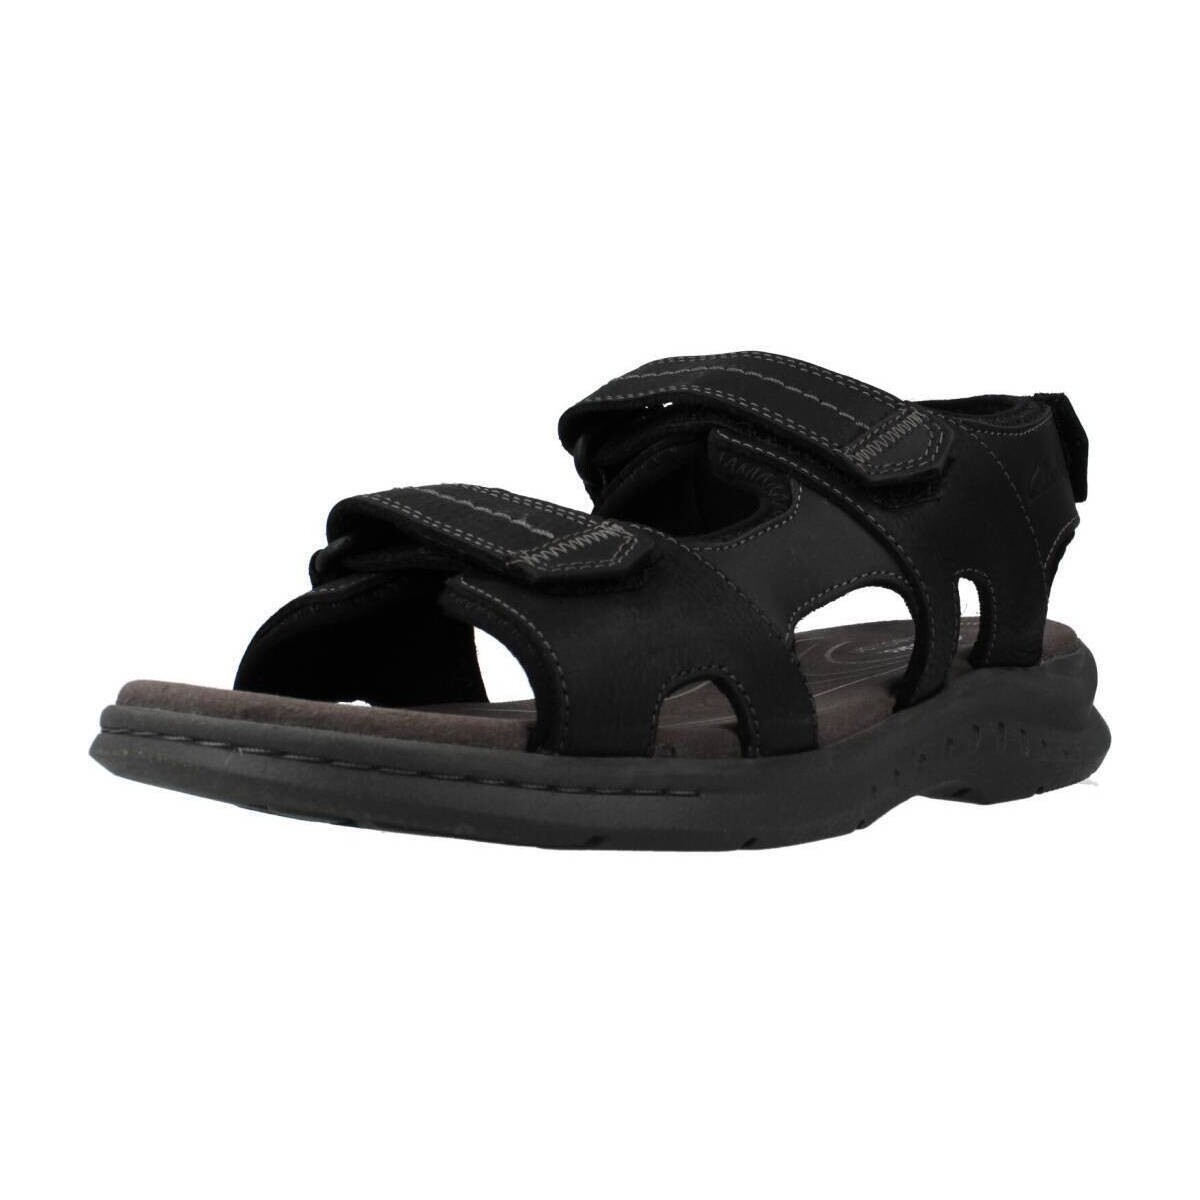 Chaussures Homme Sandales et Nu-pieds Clarks 26171795C Noir